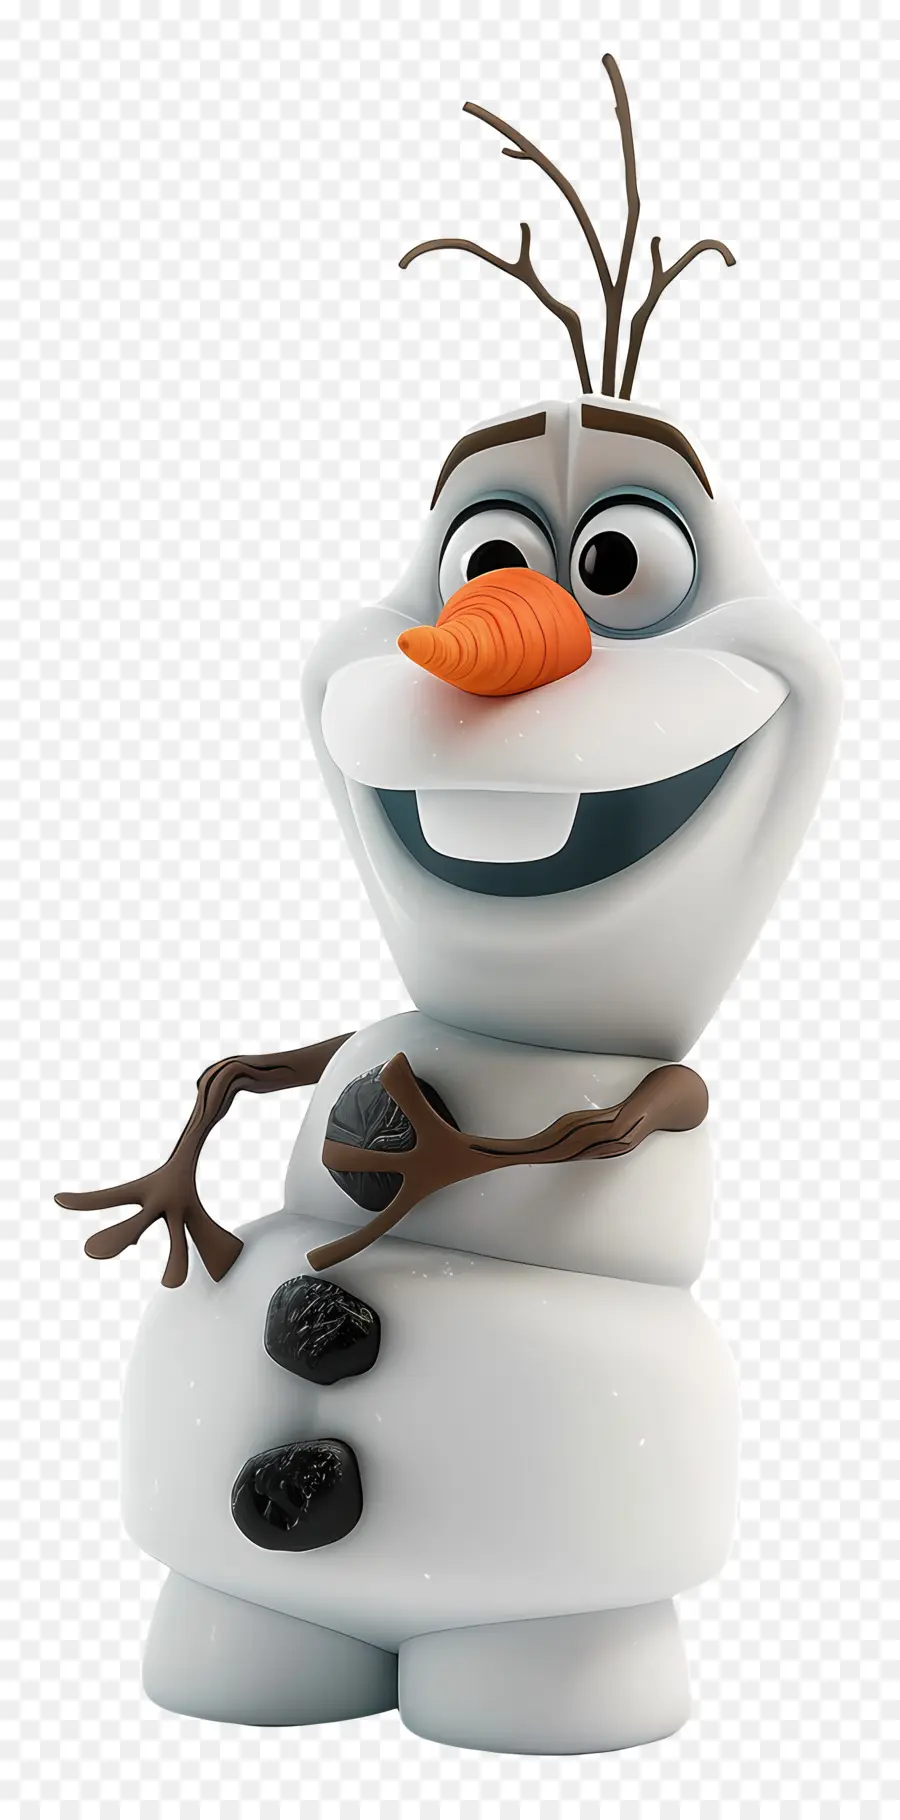 Frozen OLAF - Cartoon -Charakter Schneewittchen mit orangefarbenem Bart